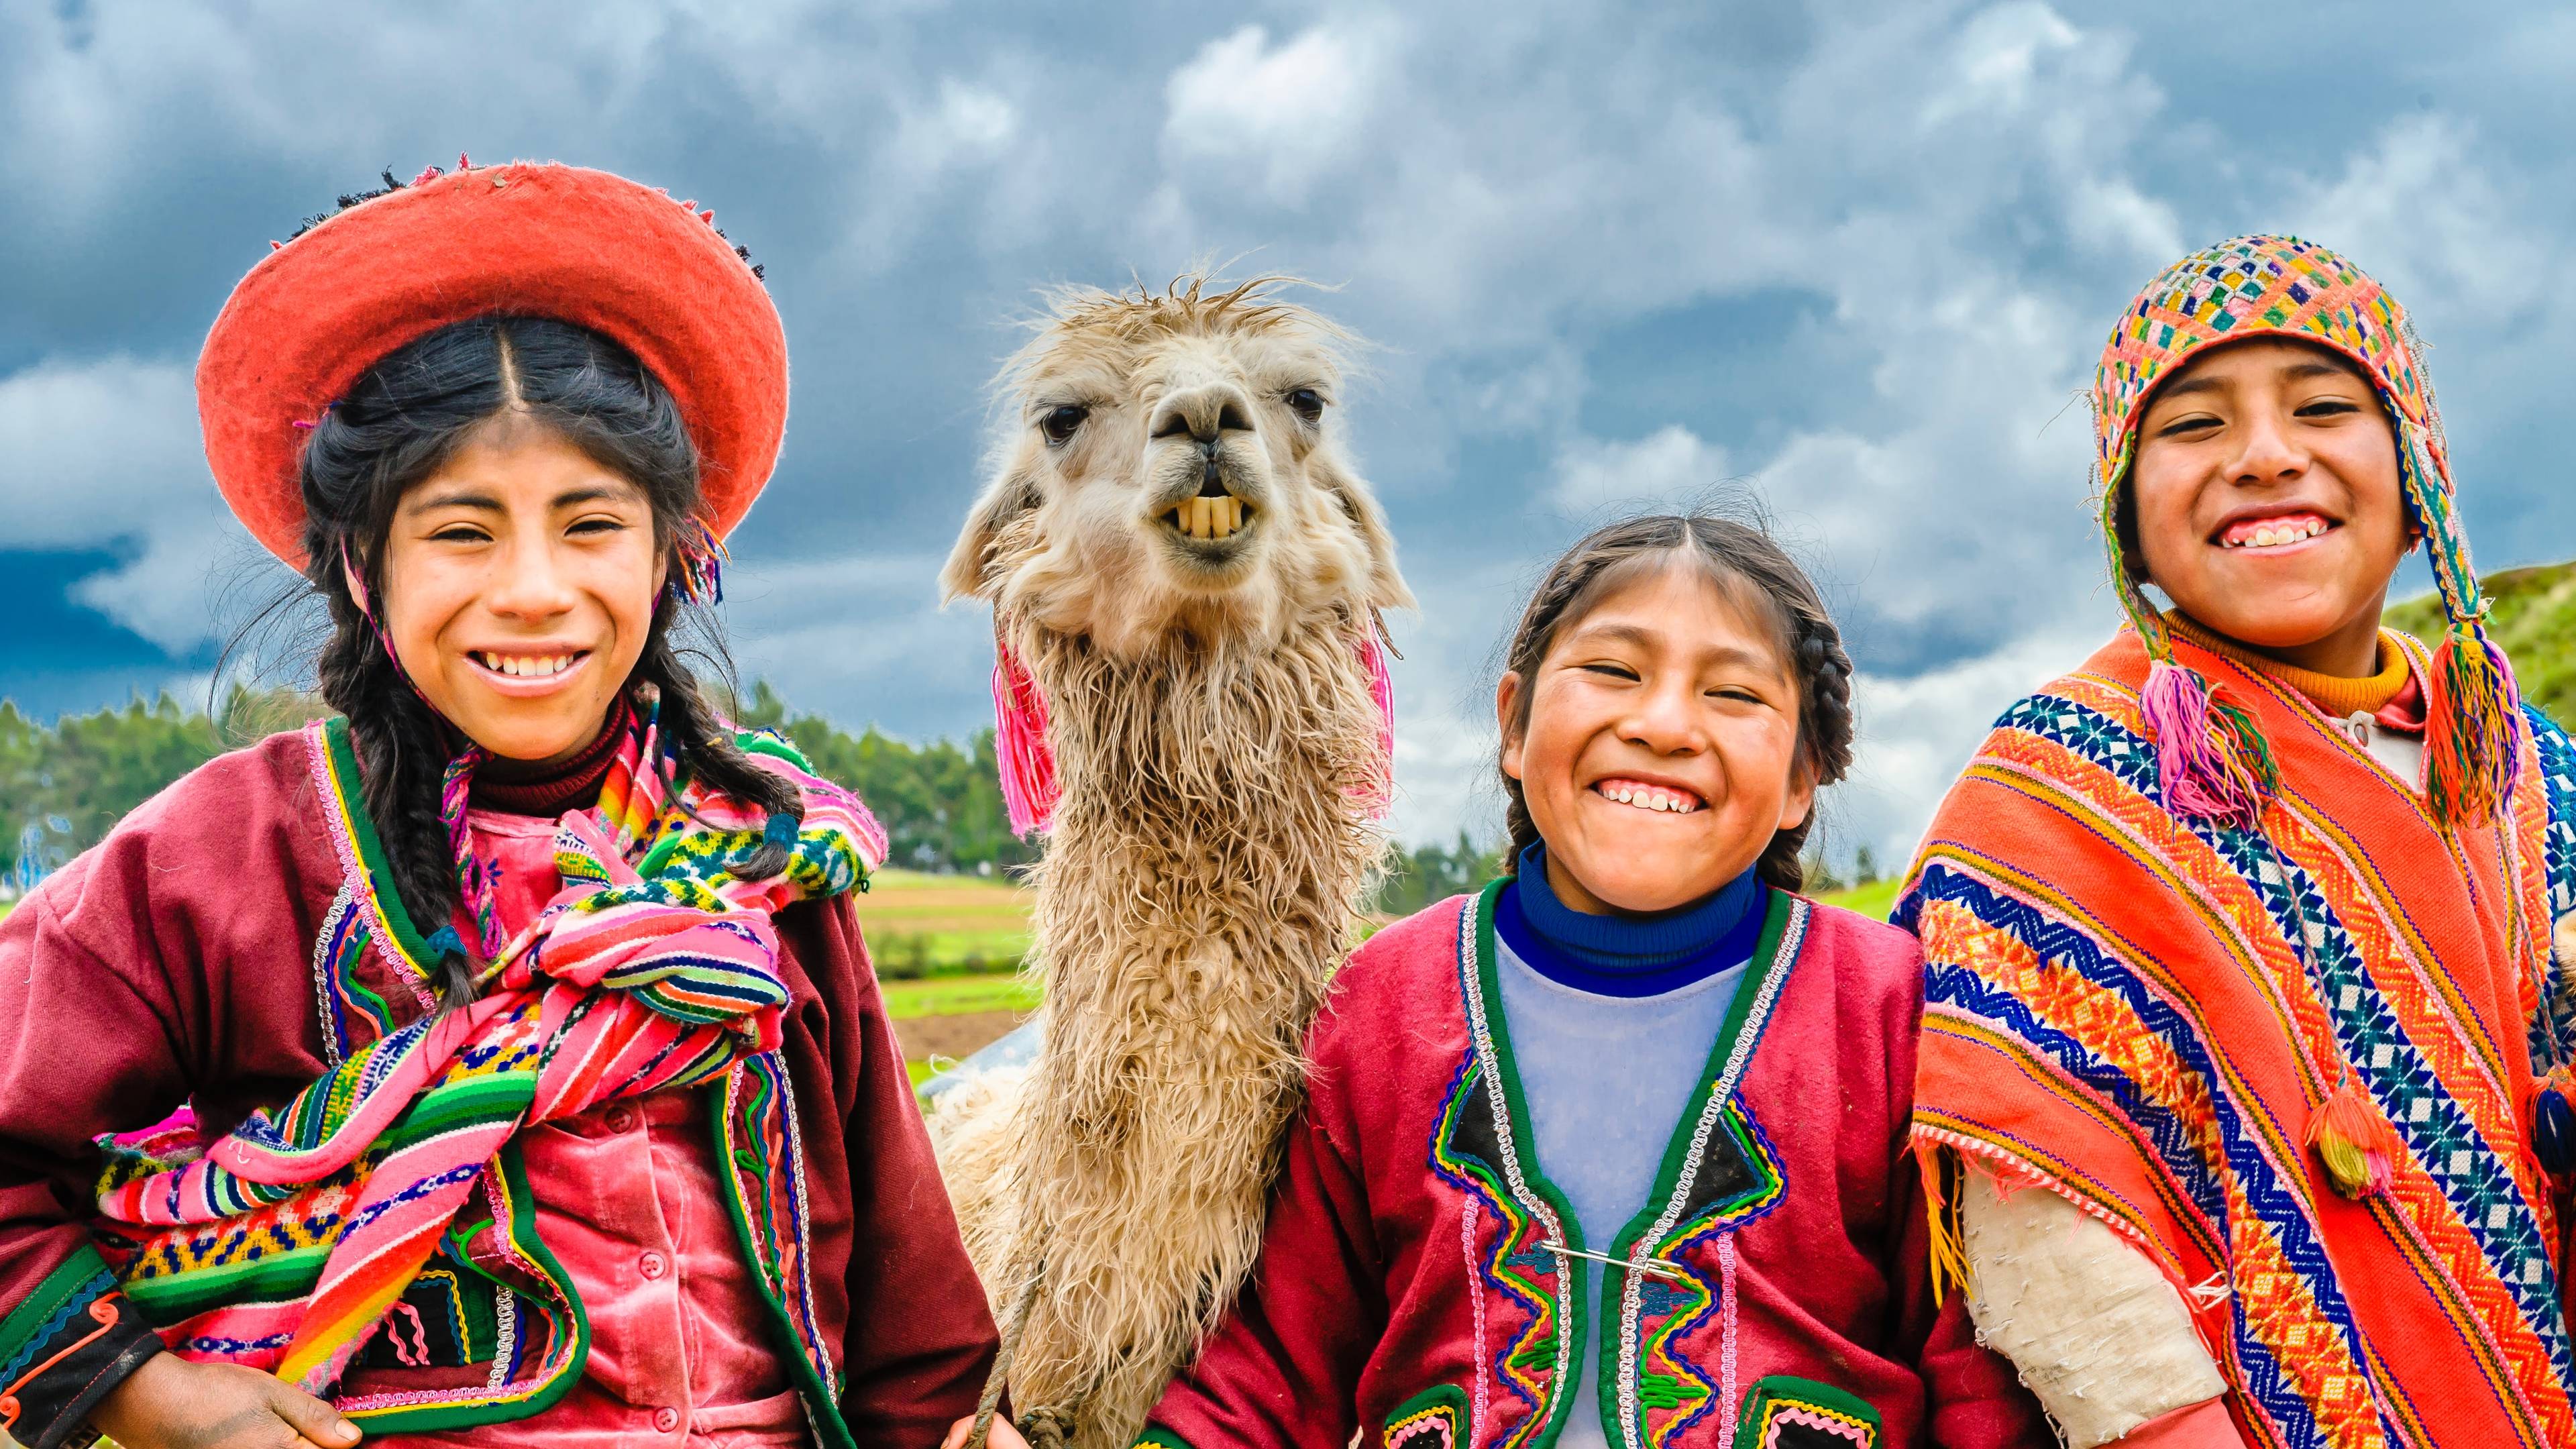 Maak kennis met de locals in het hart van de Andes